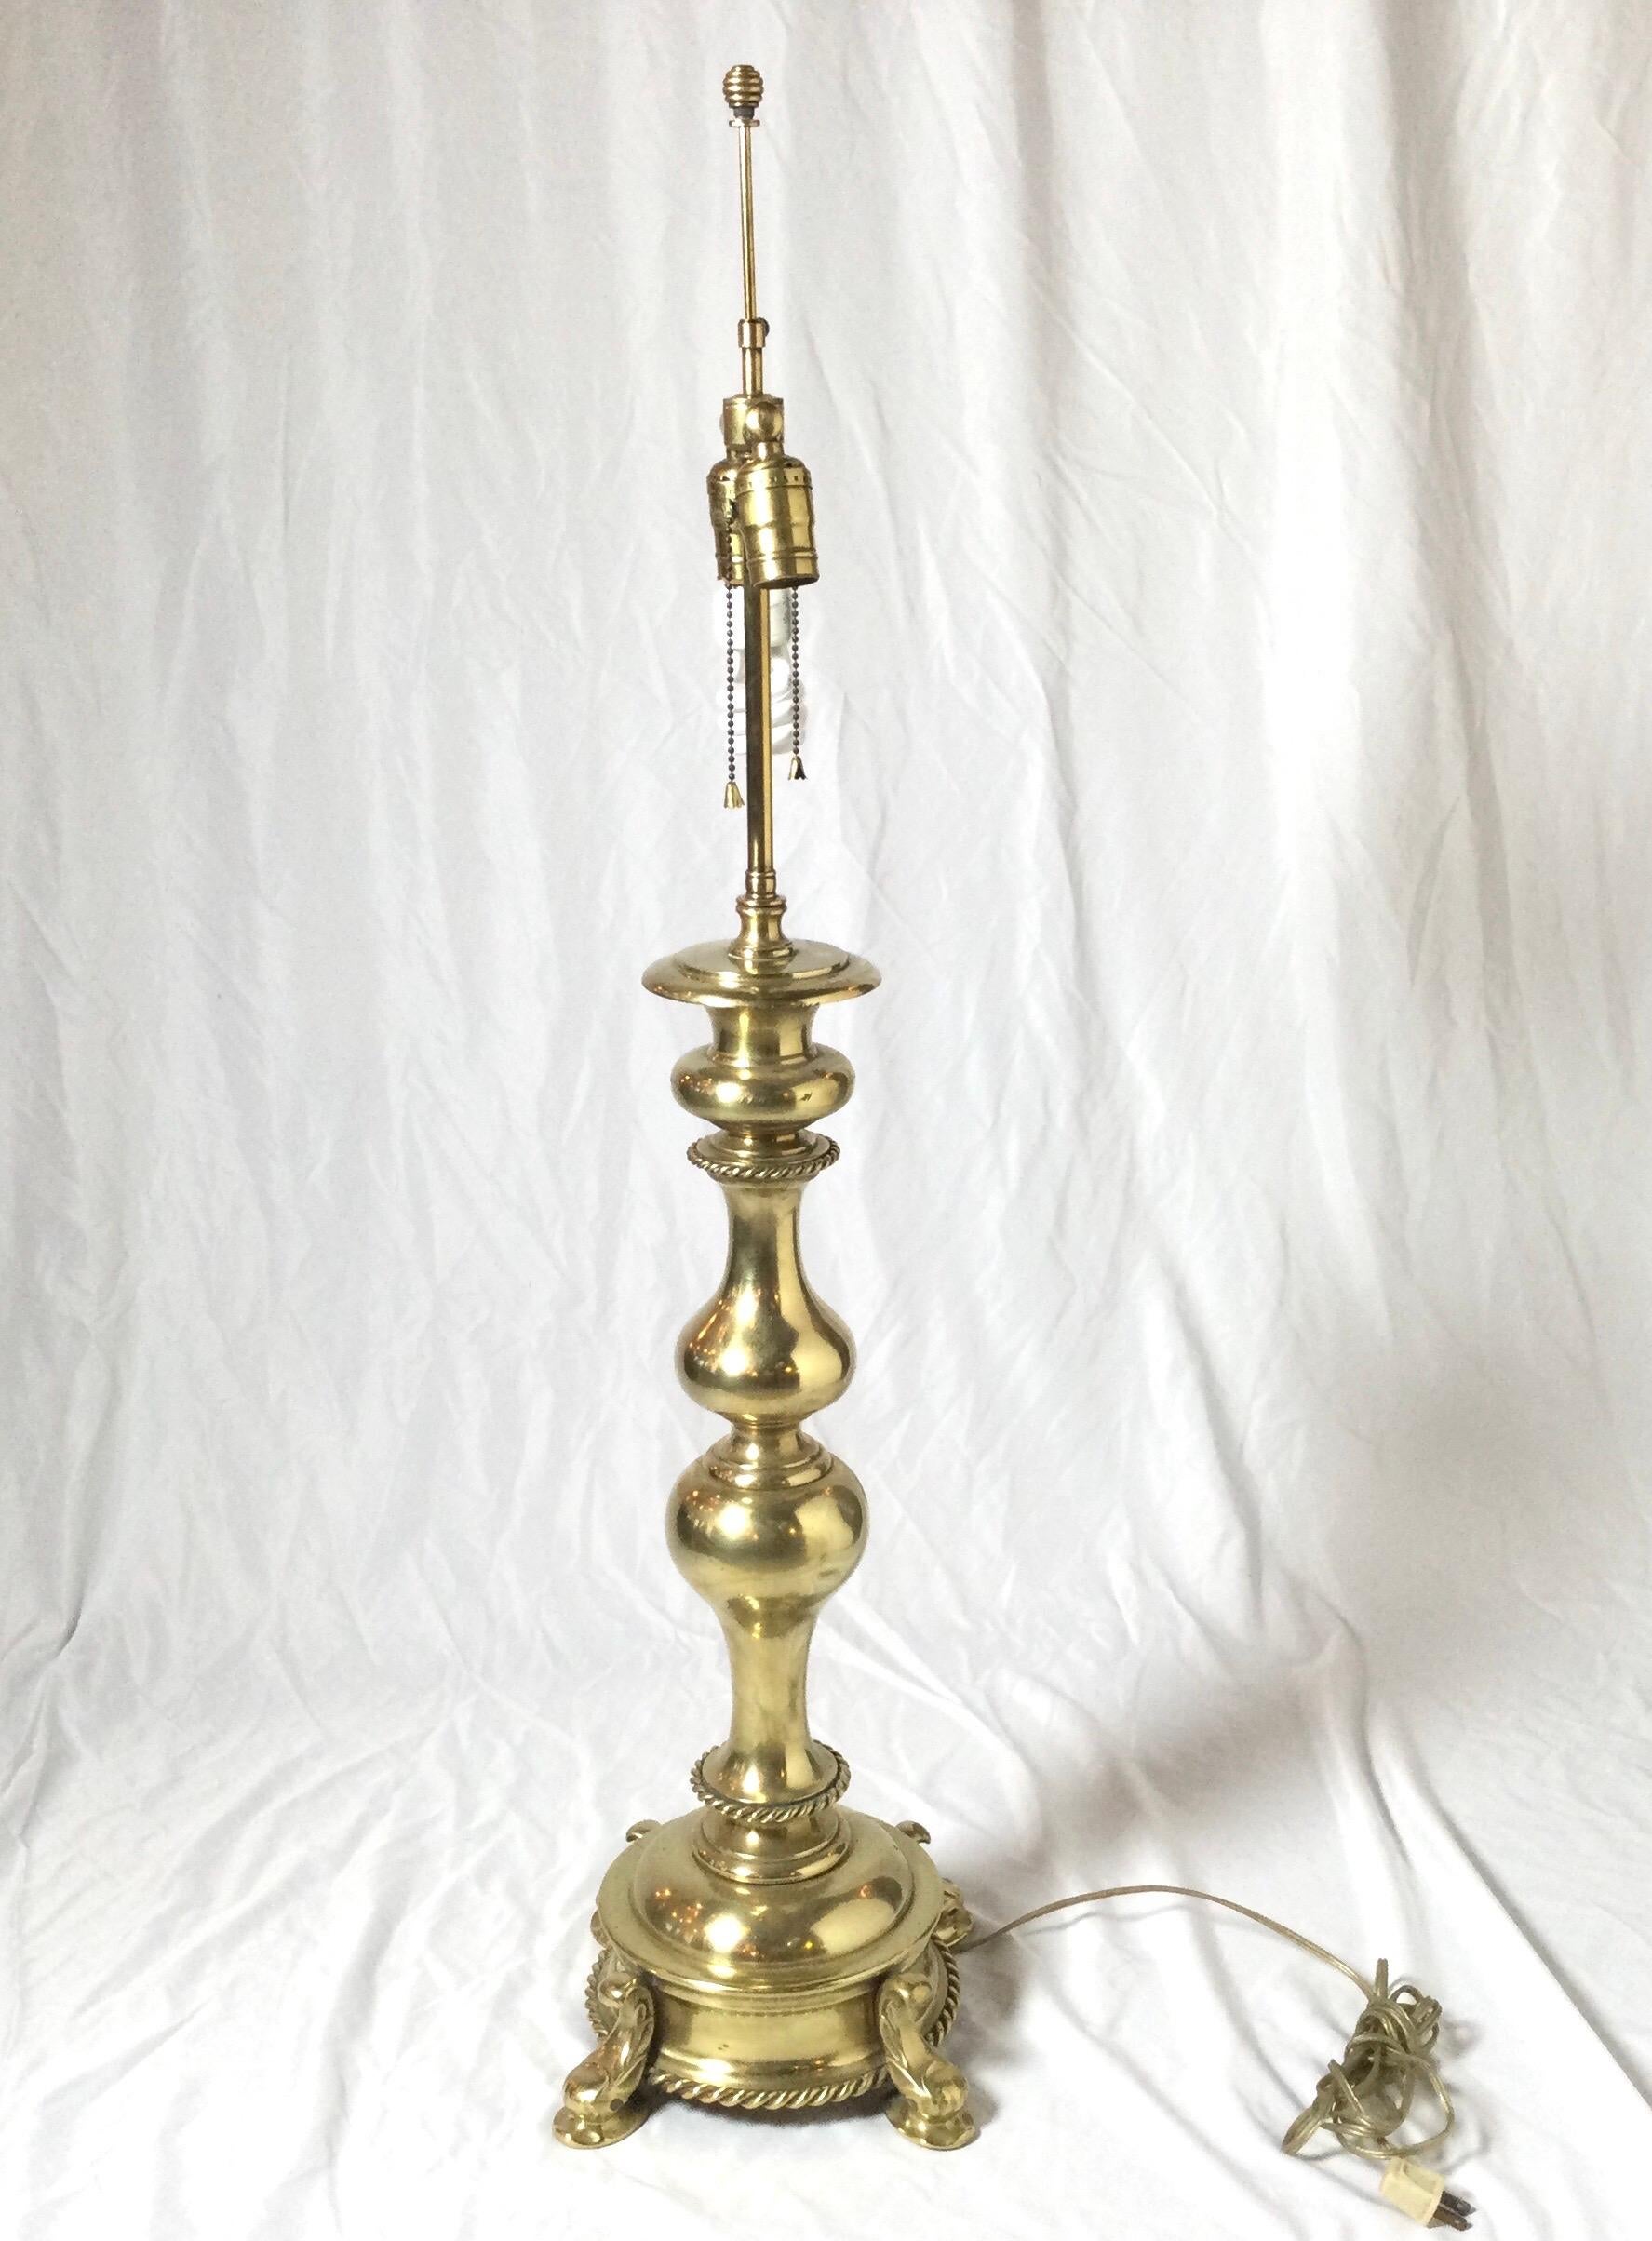 Eine hohe und massive Lampe aus Messingguss, die Chapman zugeschrieben wird. Der formschöne mittlere Doppelpunkt steht auf einem runden Sockel mit Seilbesatz. Der Schirm dient nur zu fotografischen Zwecken und ist nicht im Lieferumfang enthalten.